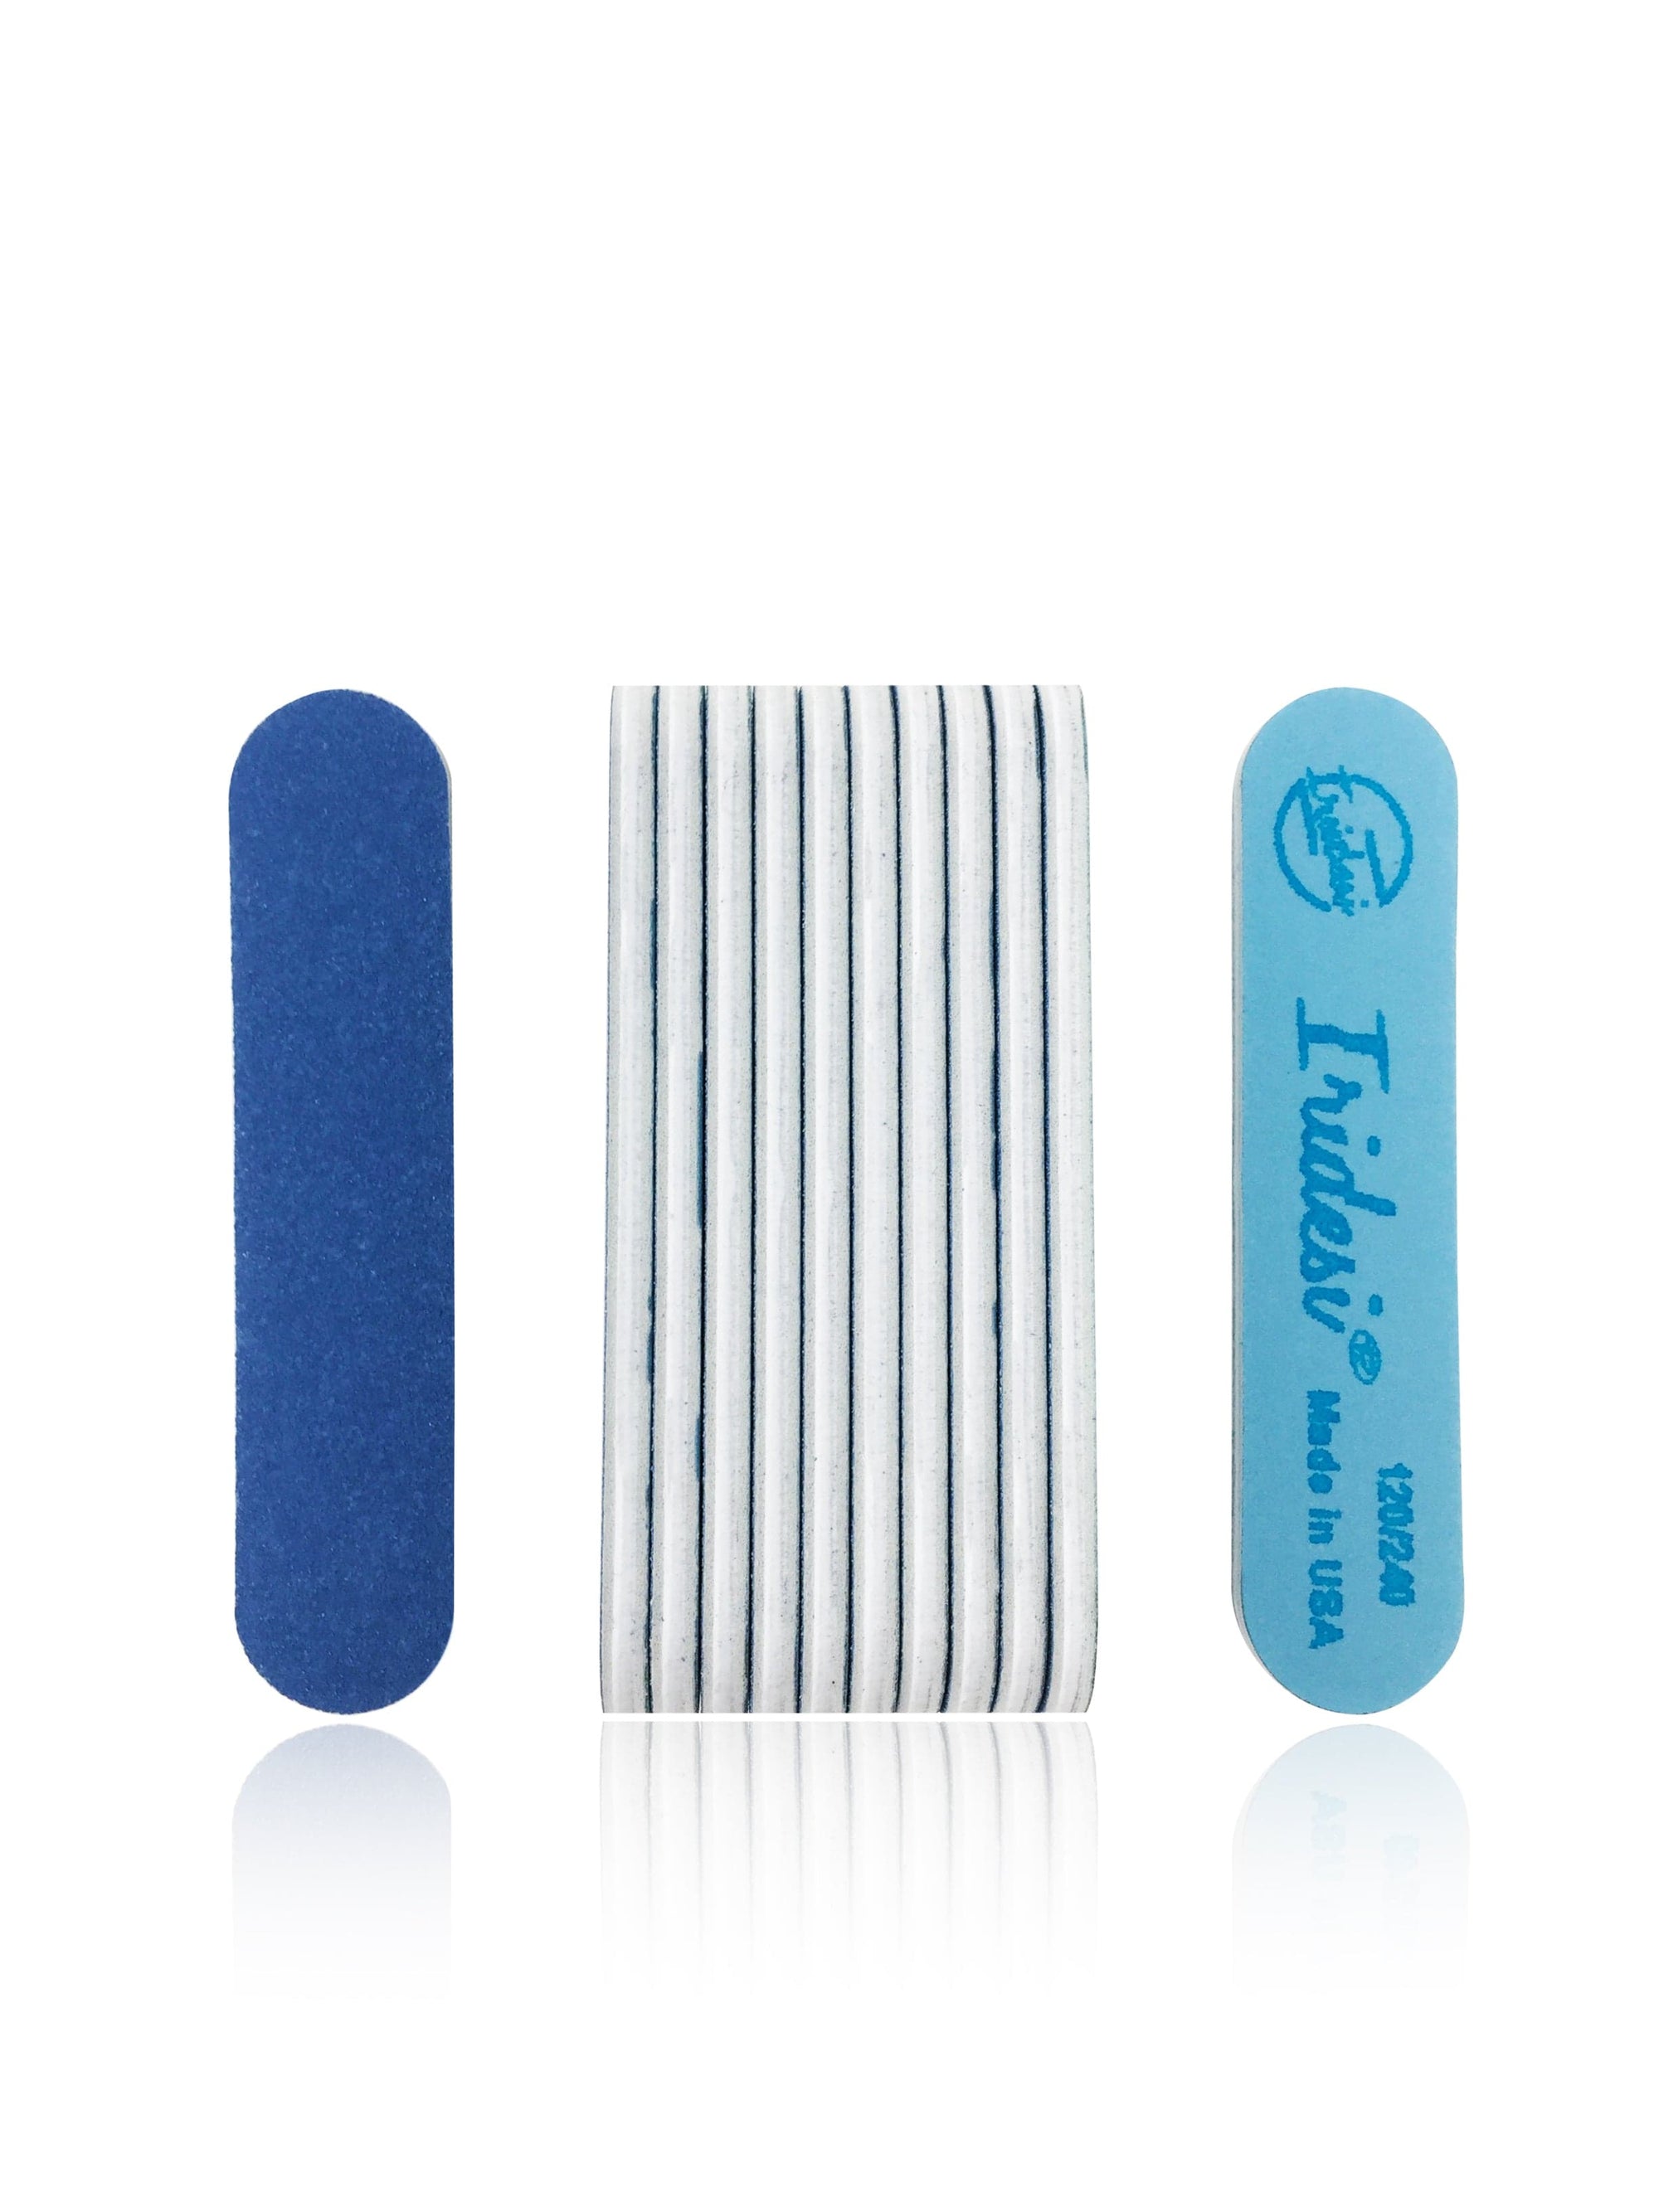 Iridesi Professional Mini limas de uñas azules 120/240 limas lavables de 3-1/2 por 3/4 pulgadas, 12 limas de uñas por paquete